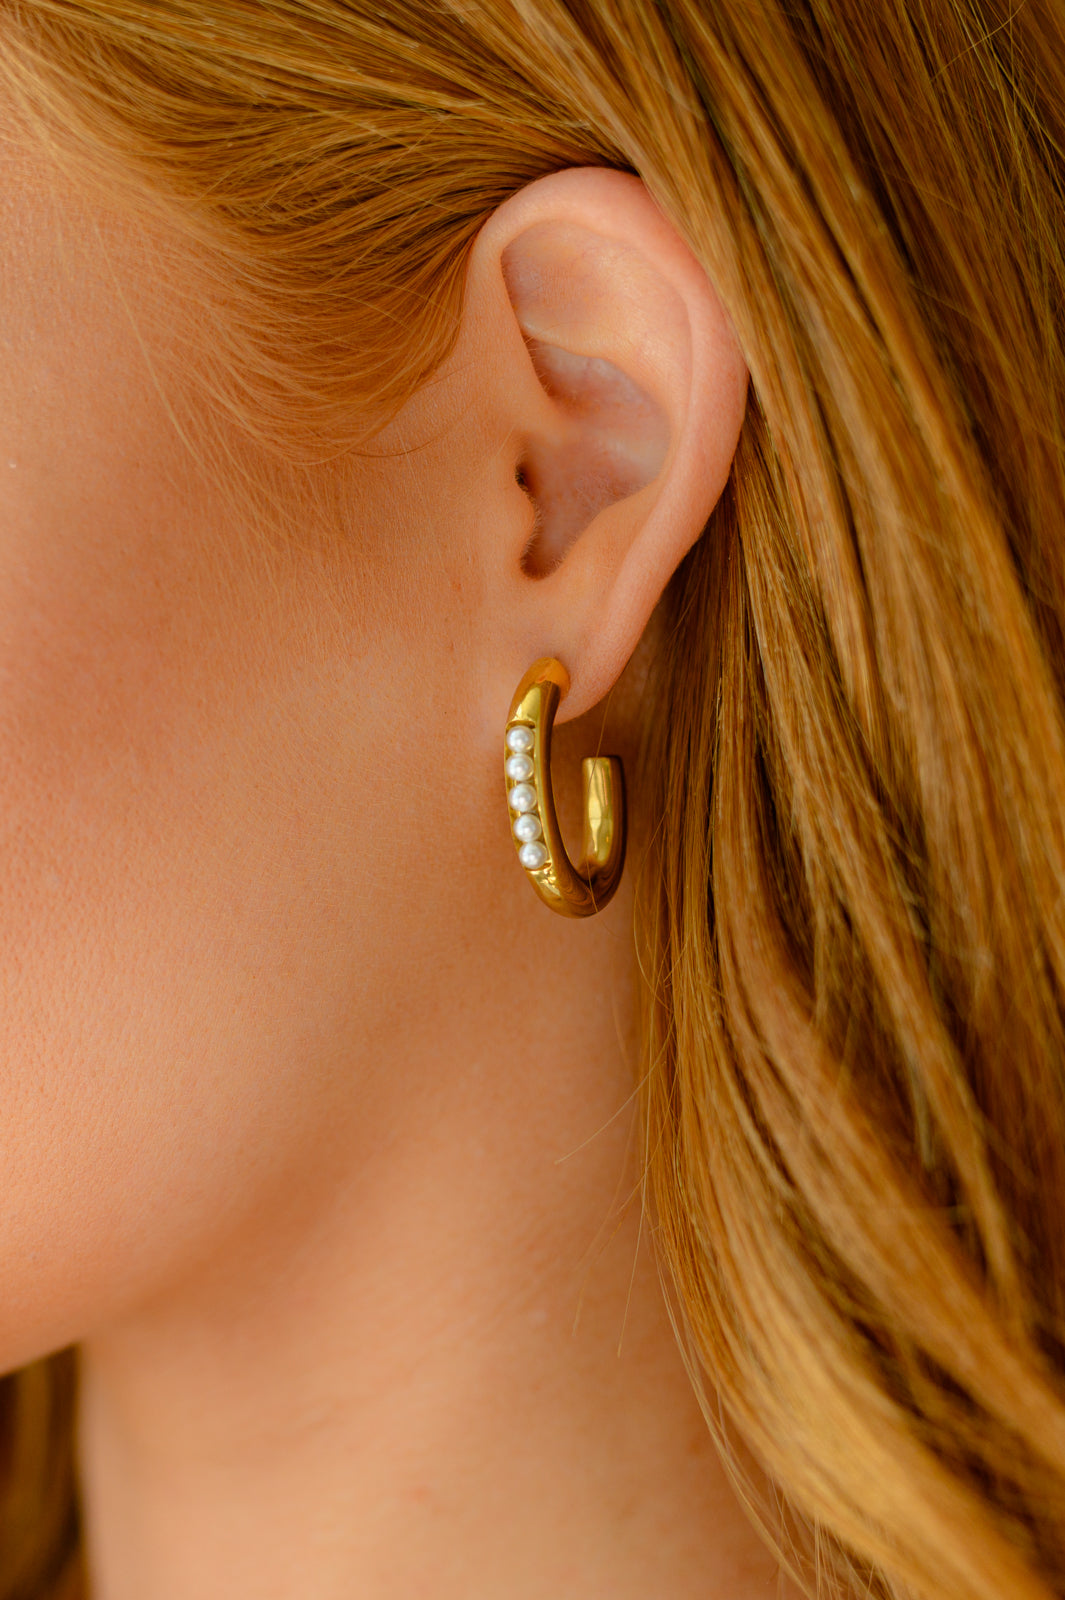 Waterproof Jewelry: Pearls In Line Earrings